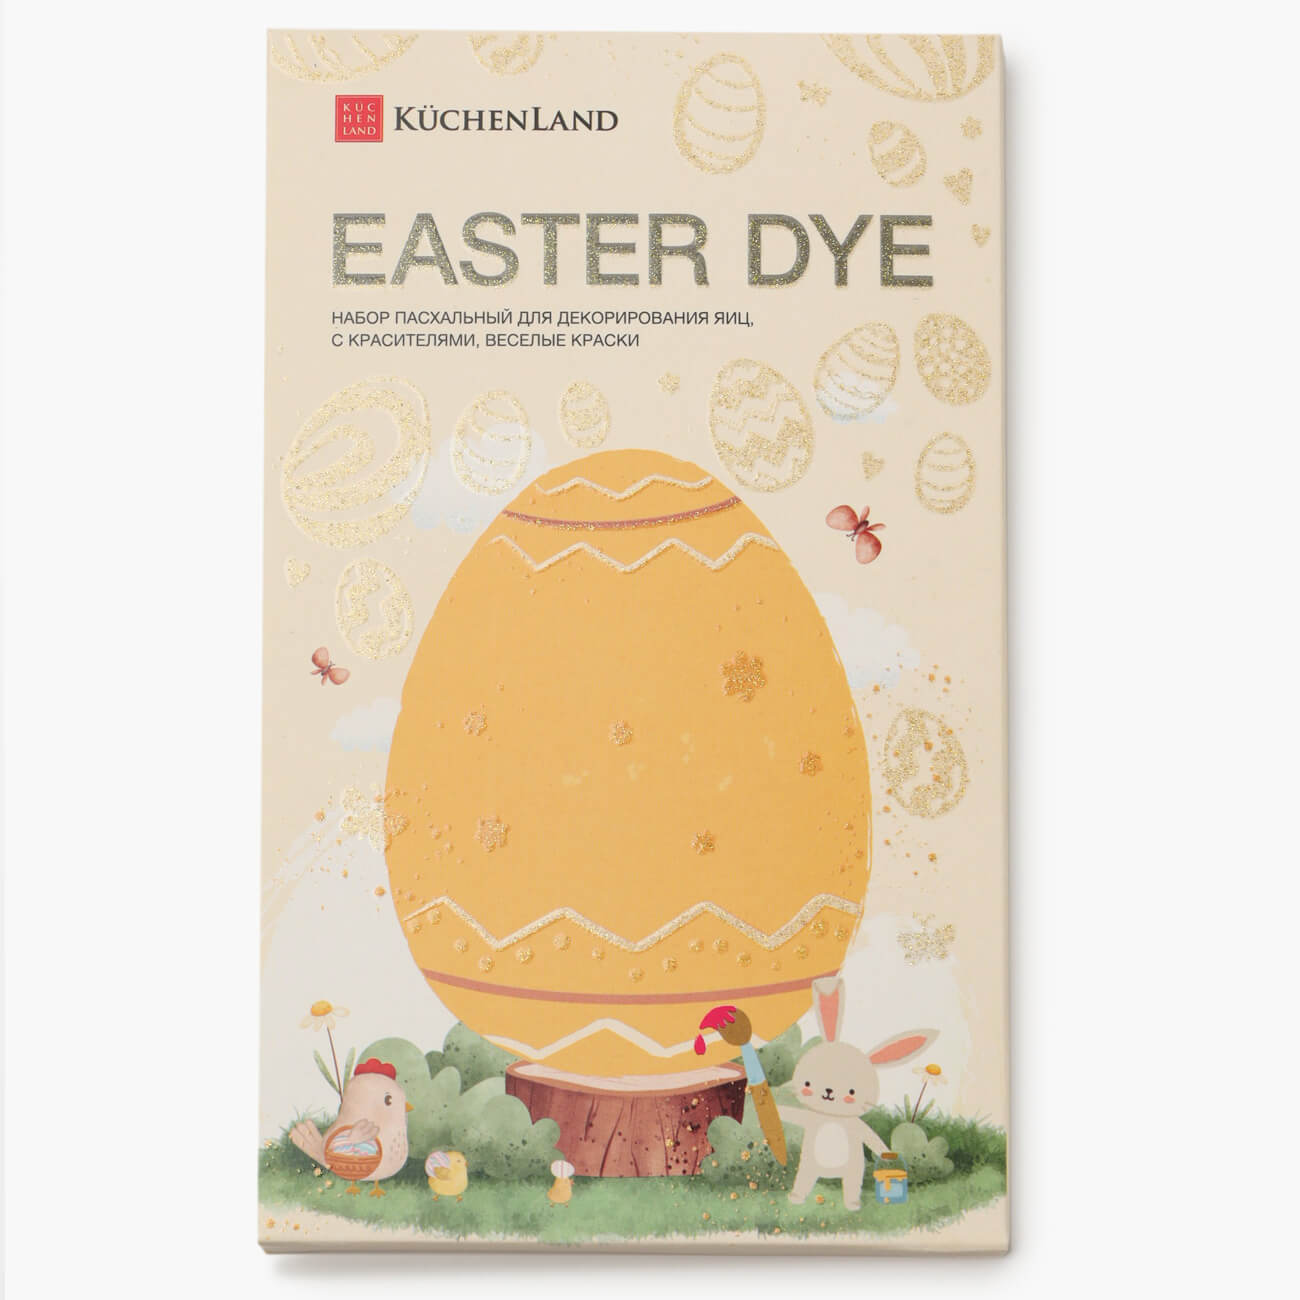 Набор пасхальный для декорирования яиц, 7 цветов/13 пр, Веселые краски, Easter dye набор термоэтикеток для яиц 10 шт 15х9 см пасхальный пвх звери easter